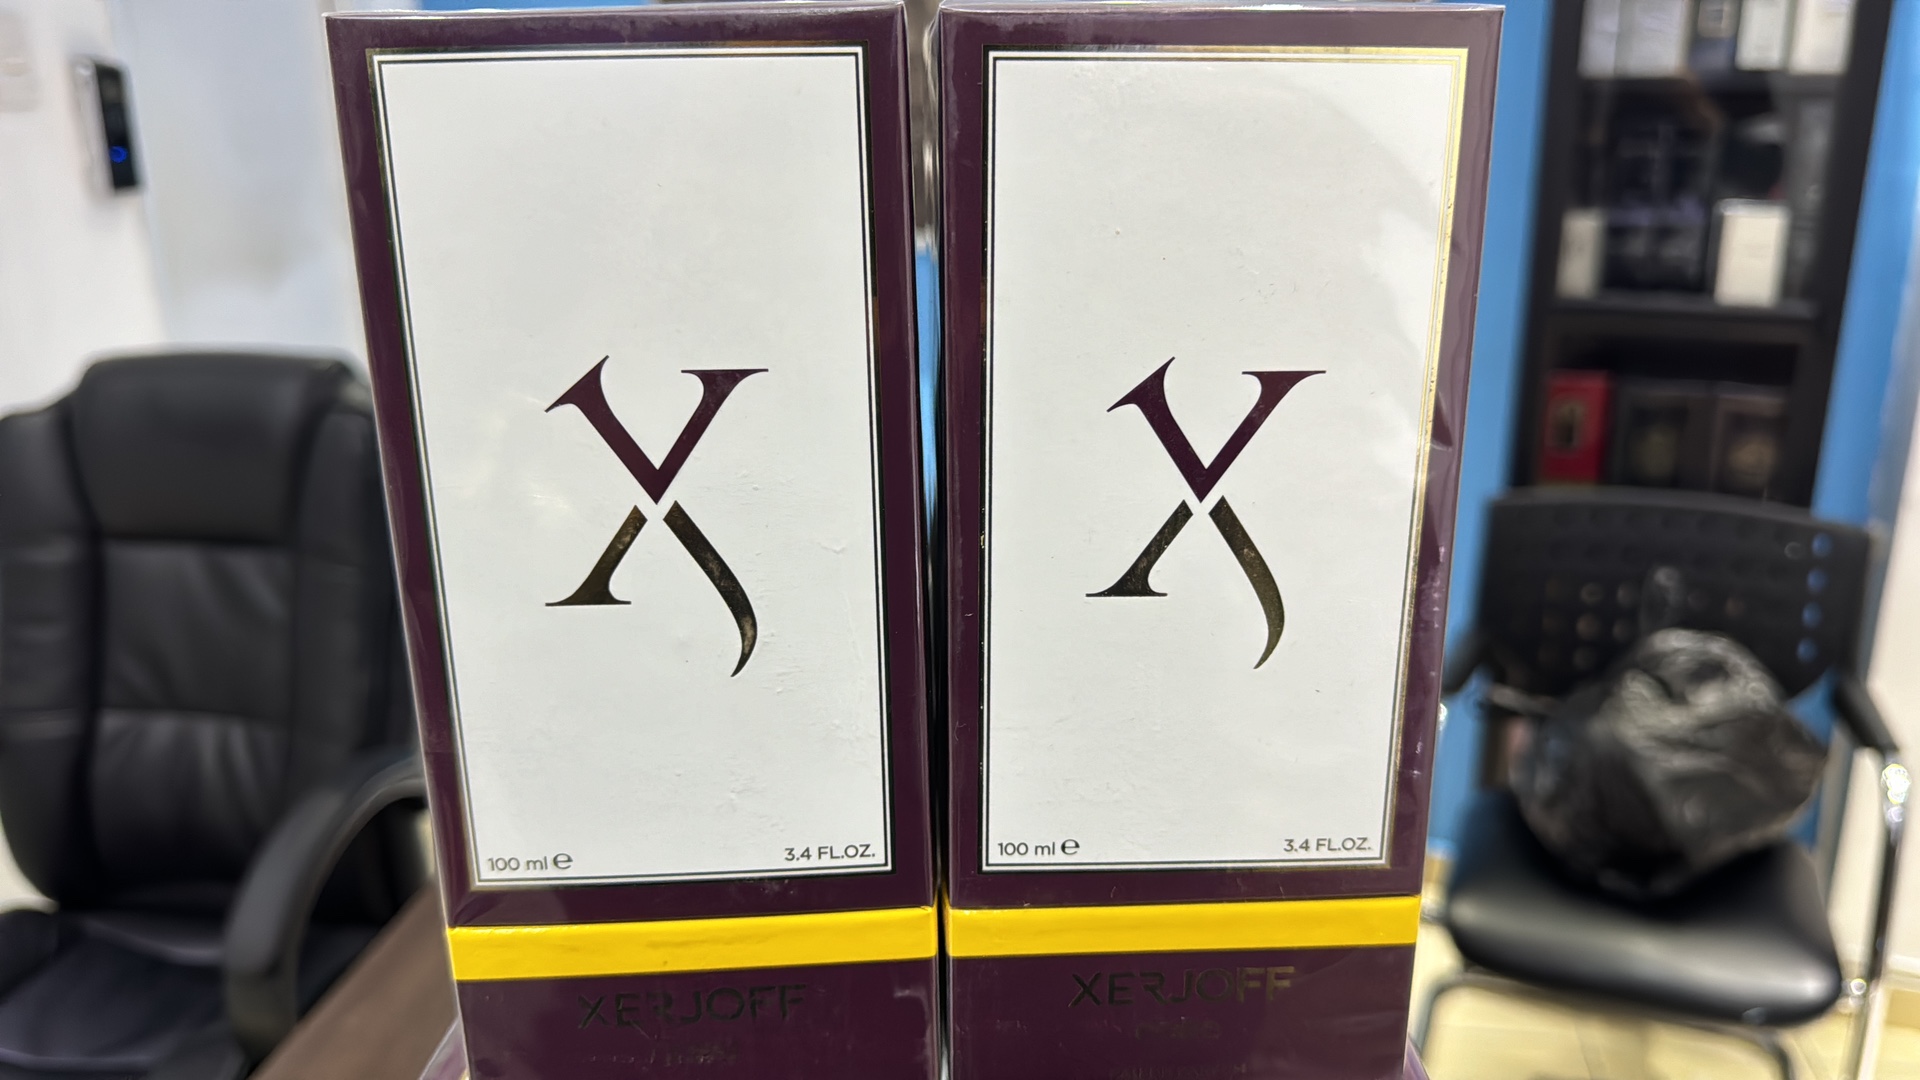 joyas, relojes y accesorios - Vendo Perfumes Xerjoff CORO 100ML - Nuevos a Originales RD$ 13,500 NEG